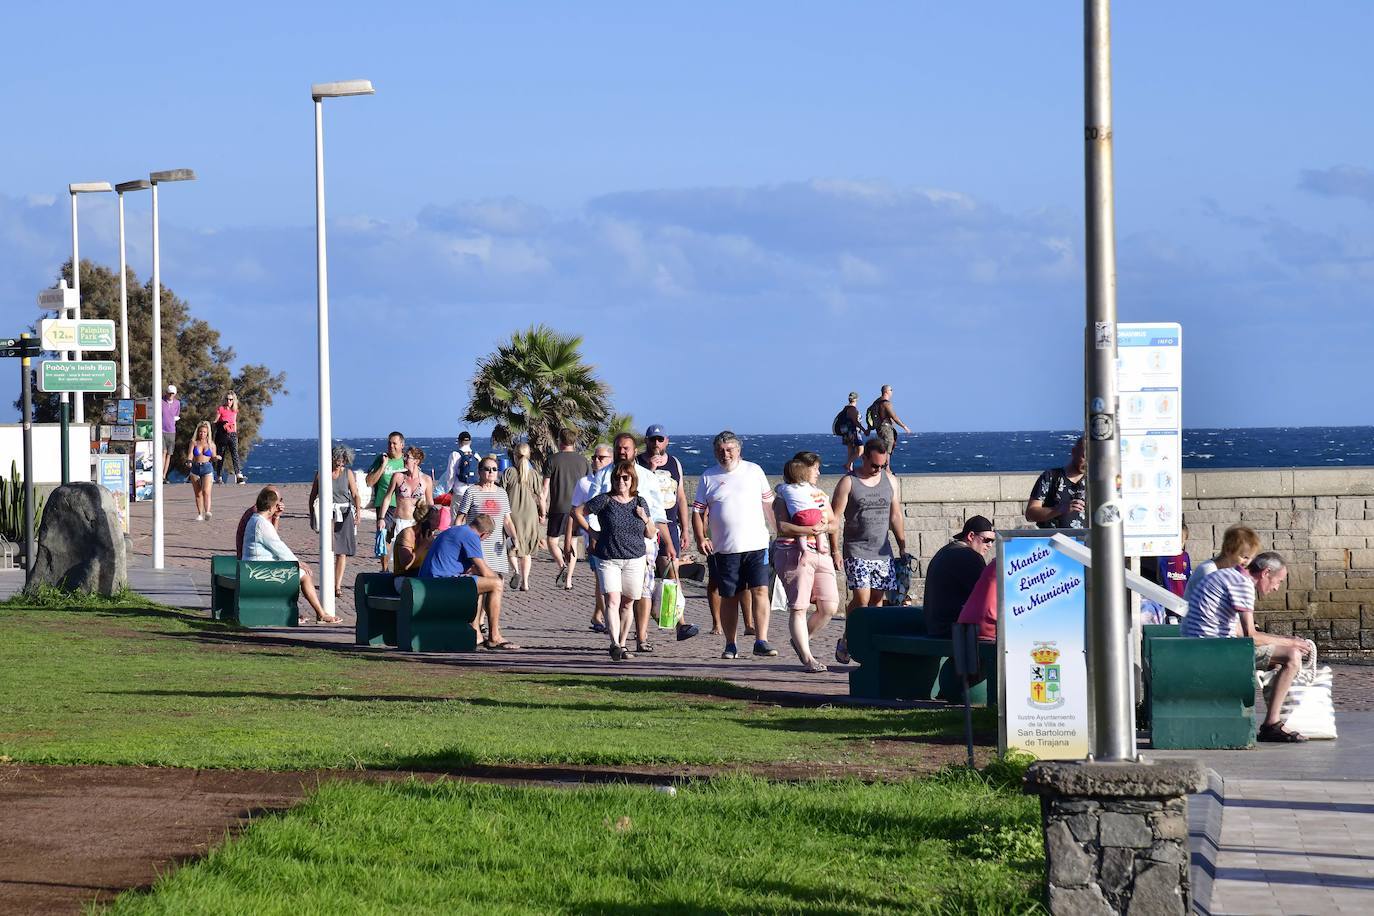 Fotos: Los turistas disfrutan del sur de Gran Canaria